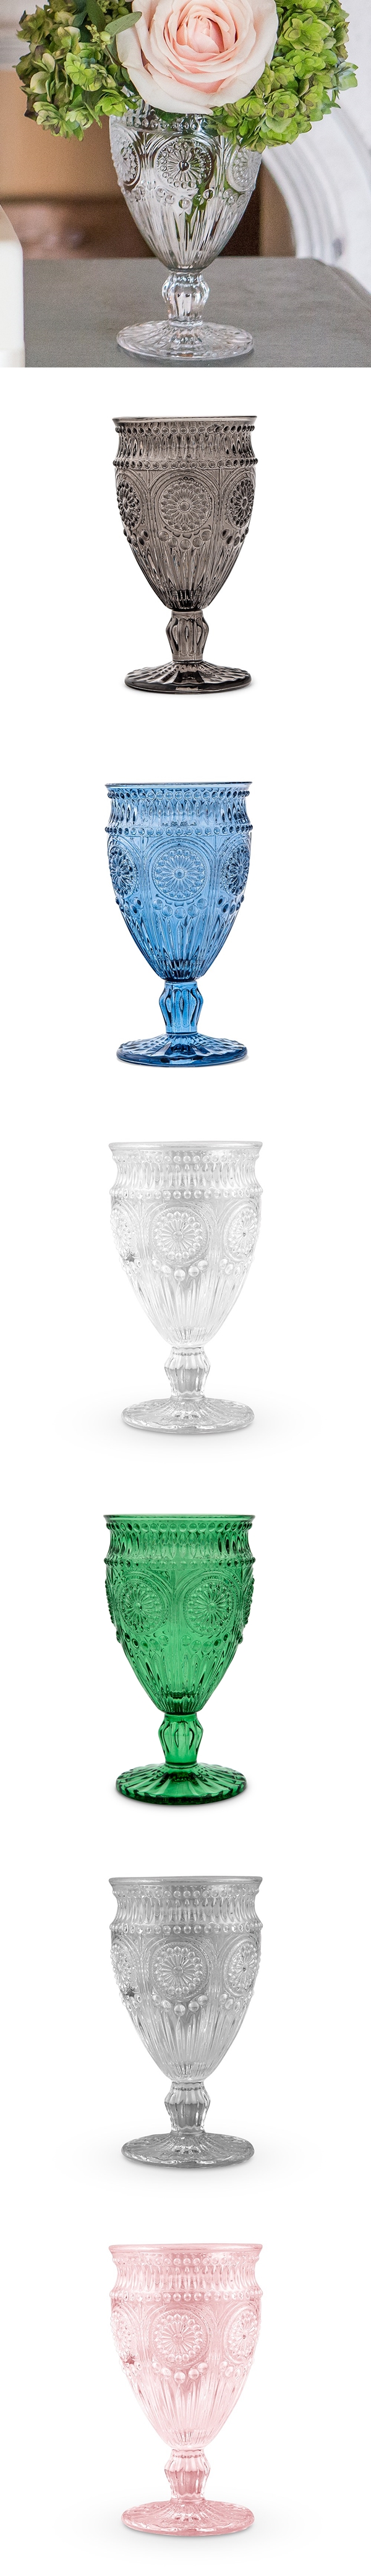 Weddingstar Vintage-Inspired Pressed Glass Goblet (Assorted Colors)